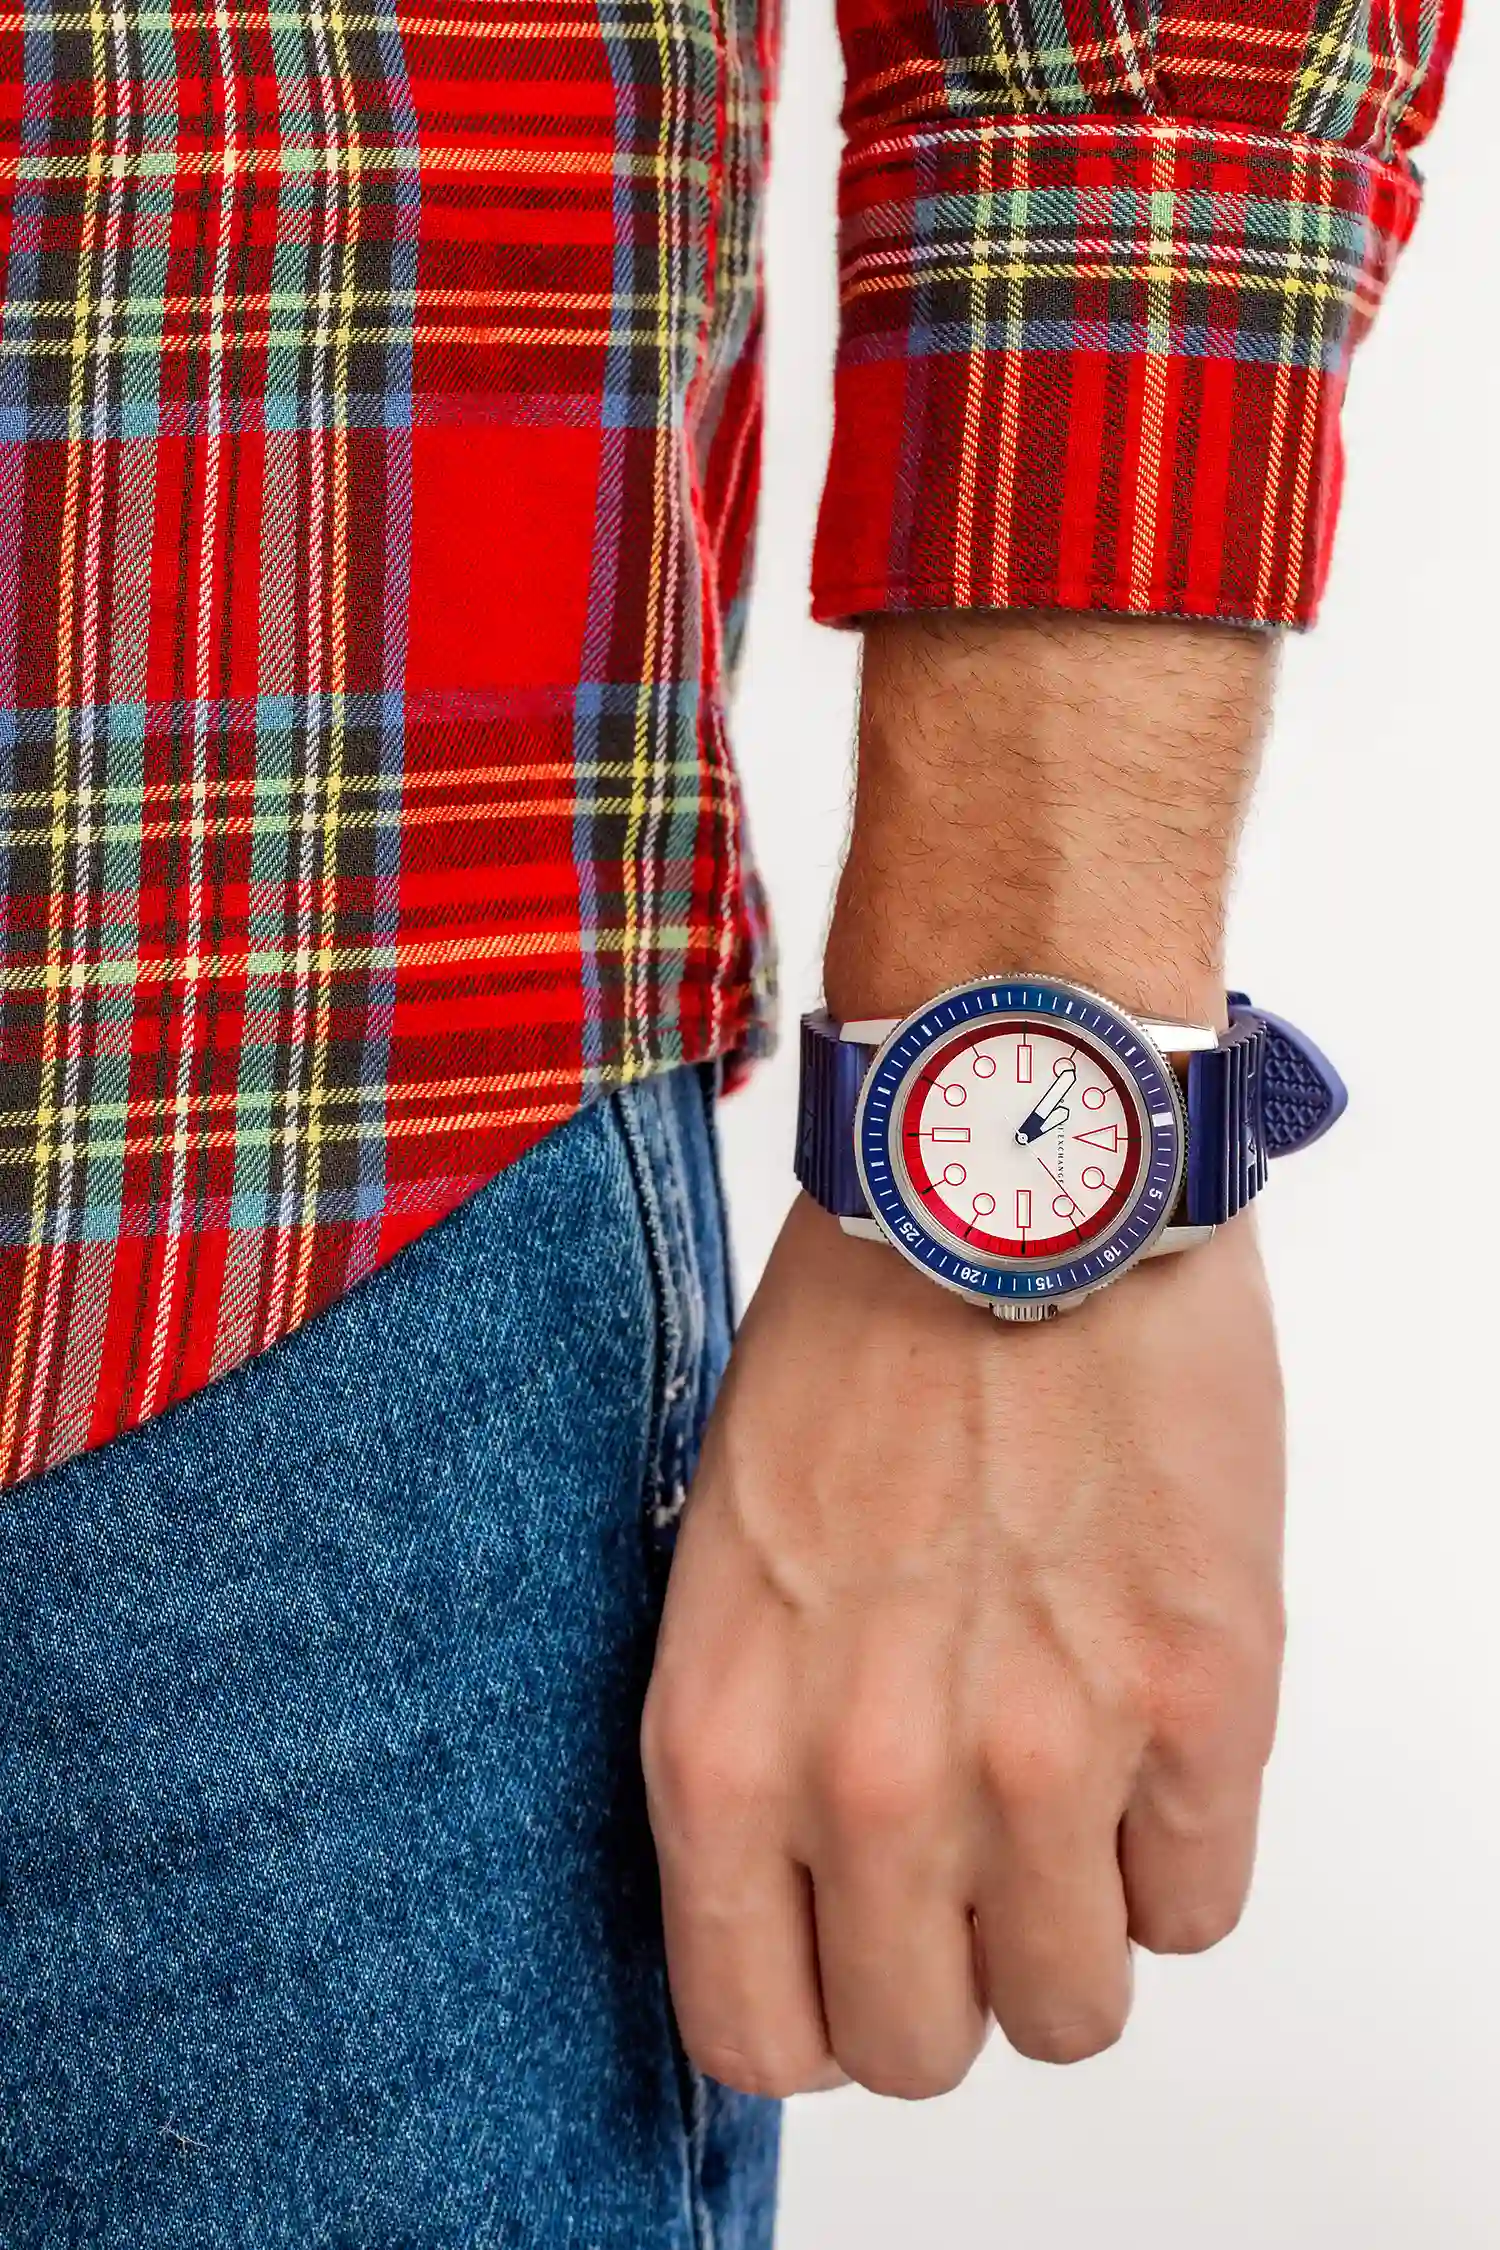 Գնել Armani Exchange Wristwatch/AX1859 Quartz - ժամացույց